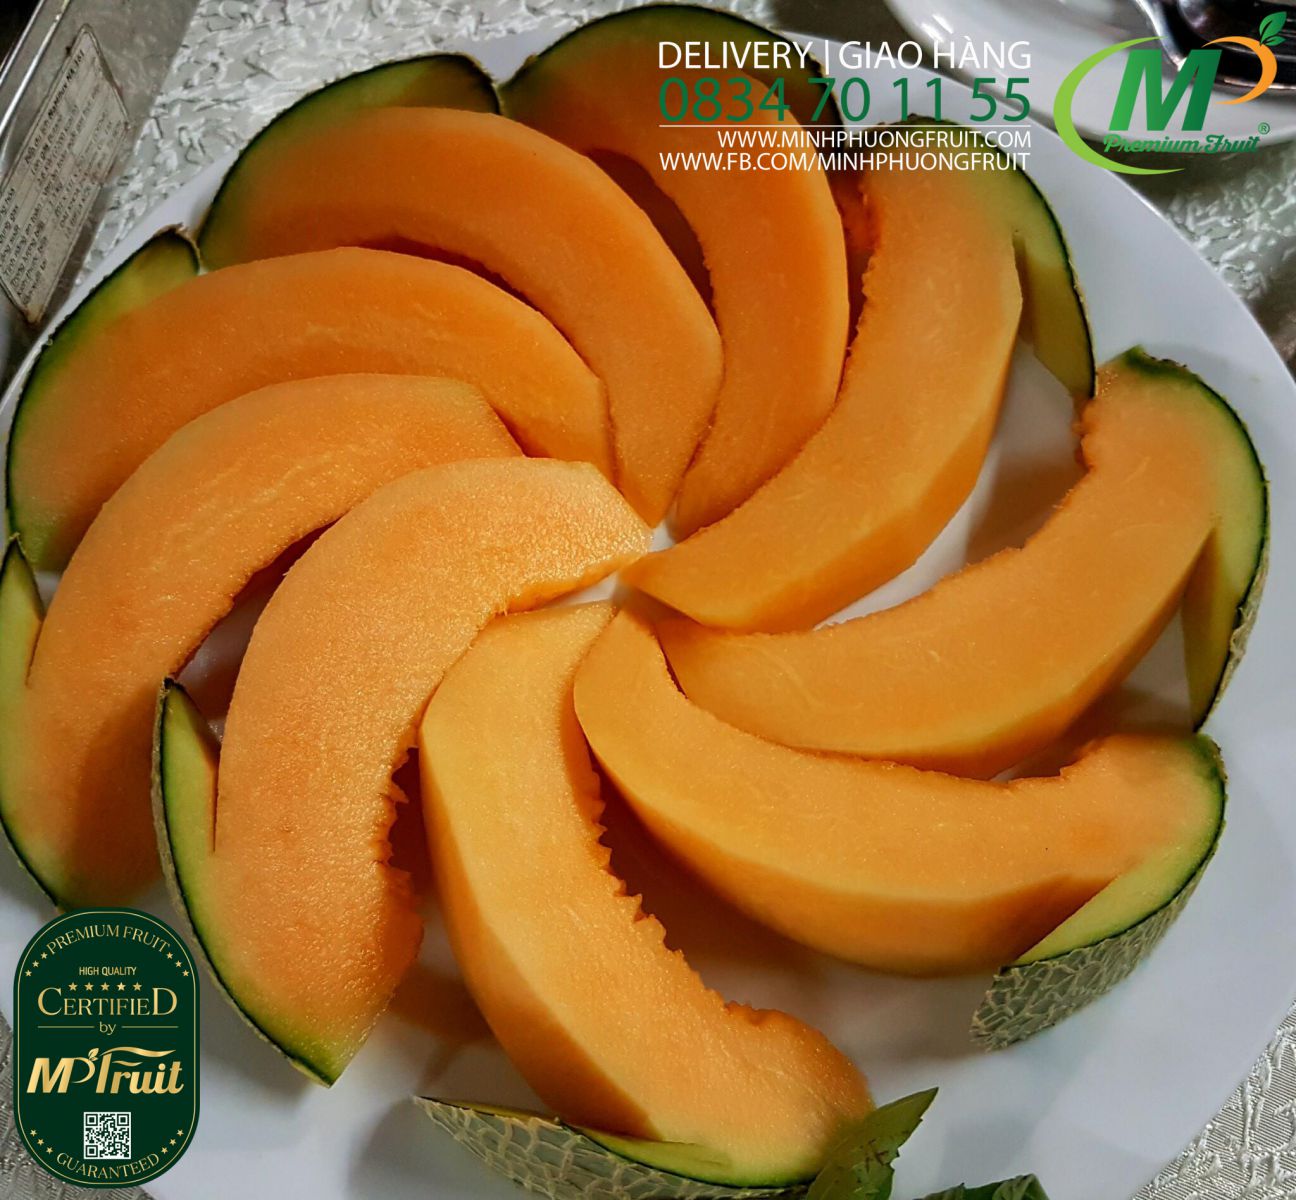 Dưa Lưới Nhật Taki Biển Hoàng Gia Organic - SeaRoyal Musk Melon Danny Green tại MP Fruits